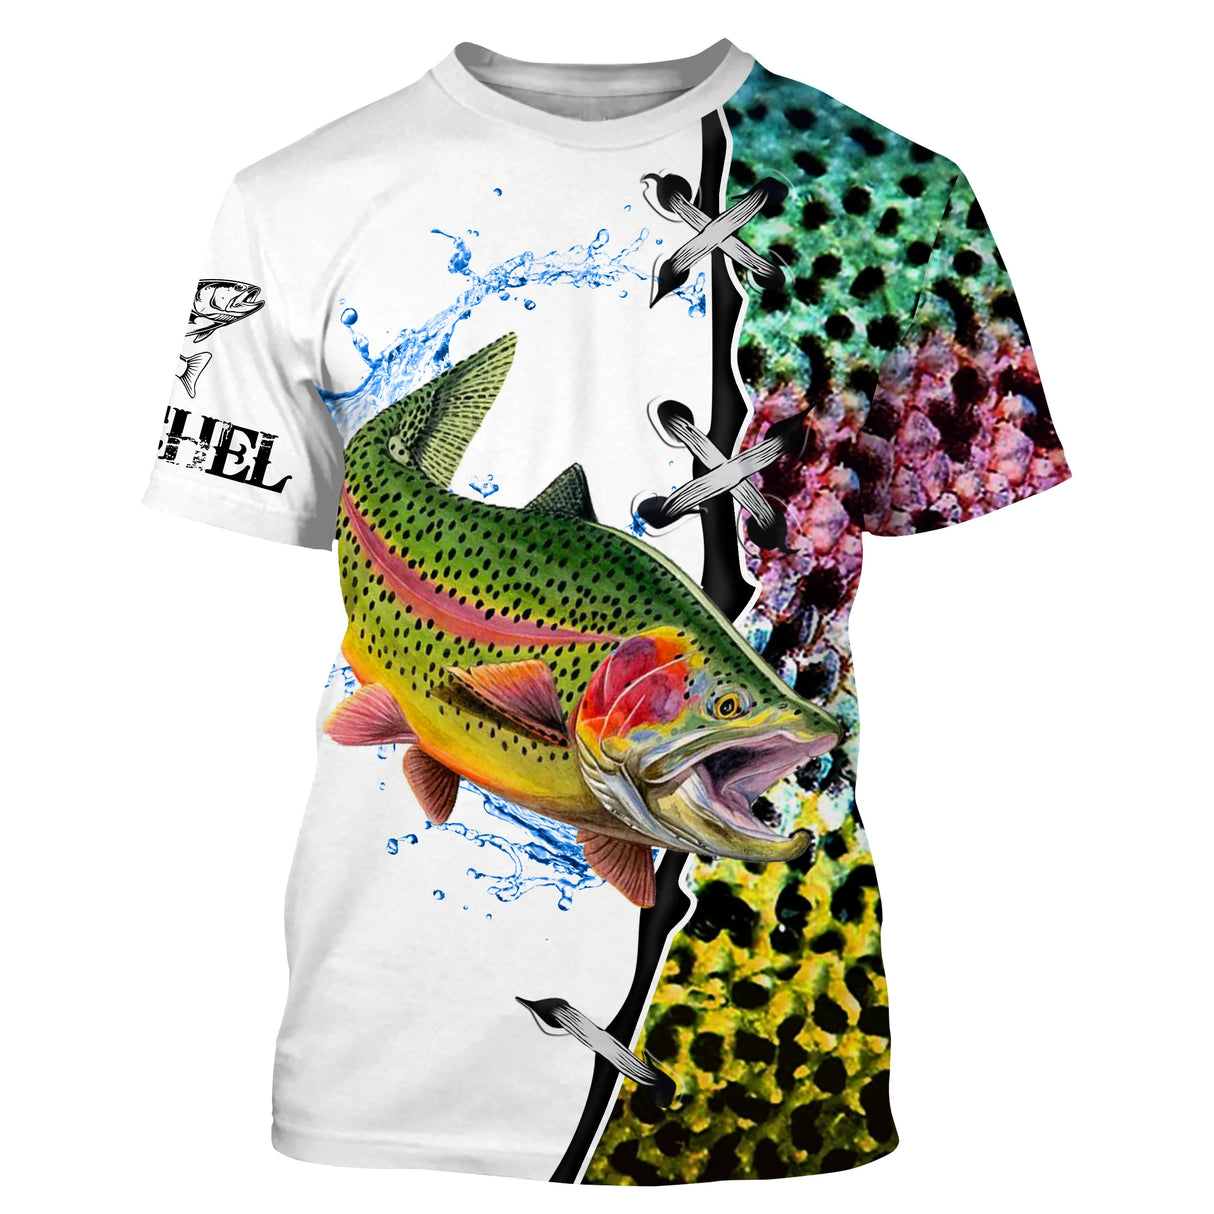 Camiseta Piel de Trucha Personalizada, Regalo Original Pescador - CT29072208